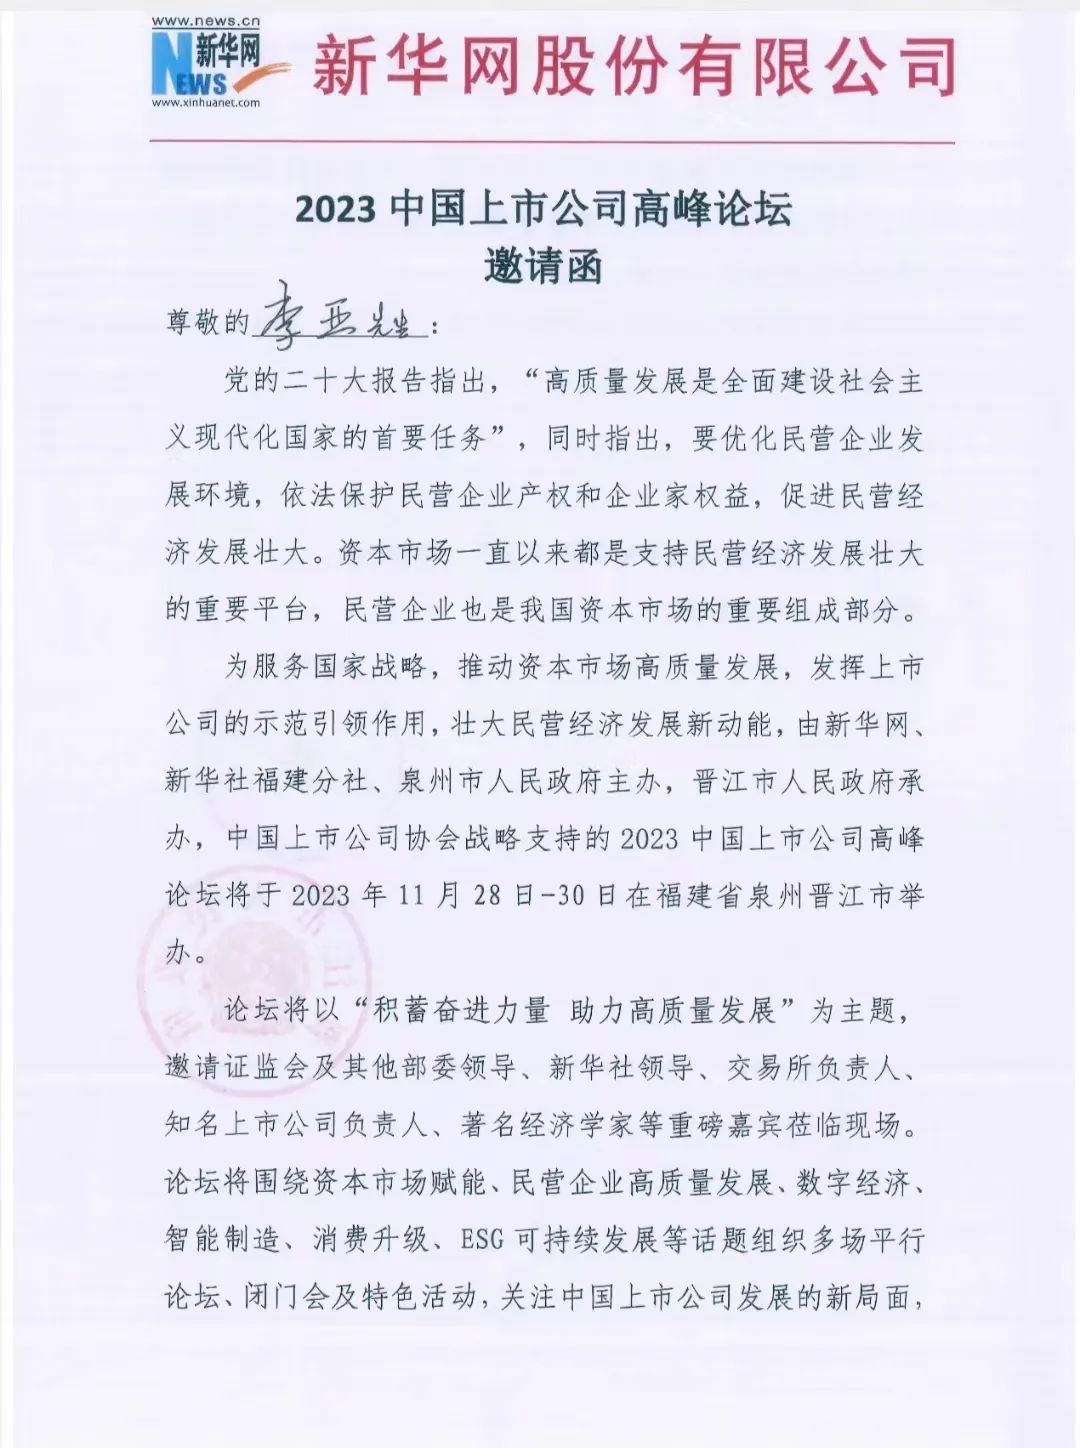 【简讯】Z6尊龙官网中国董事长受邀出席2023中国上市公司高峰论坛